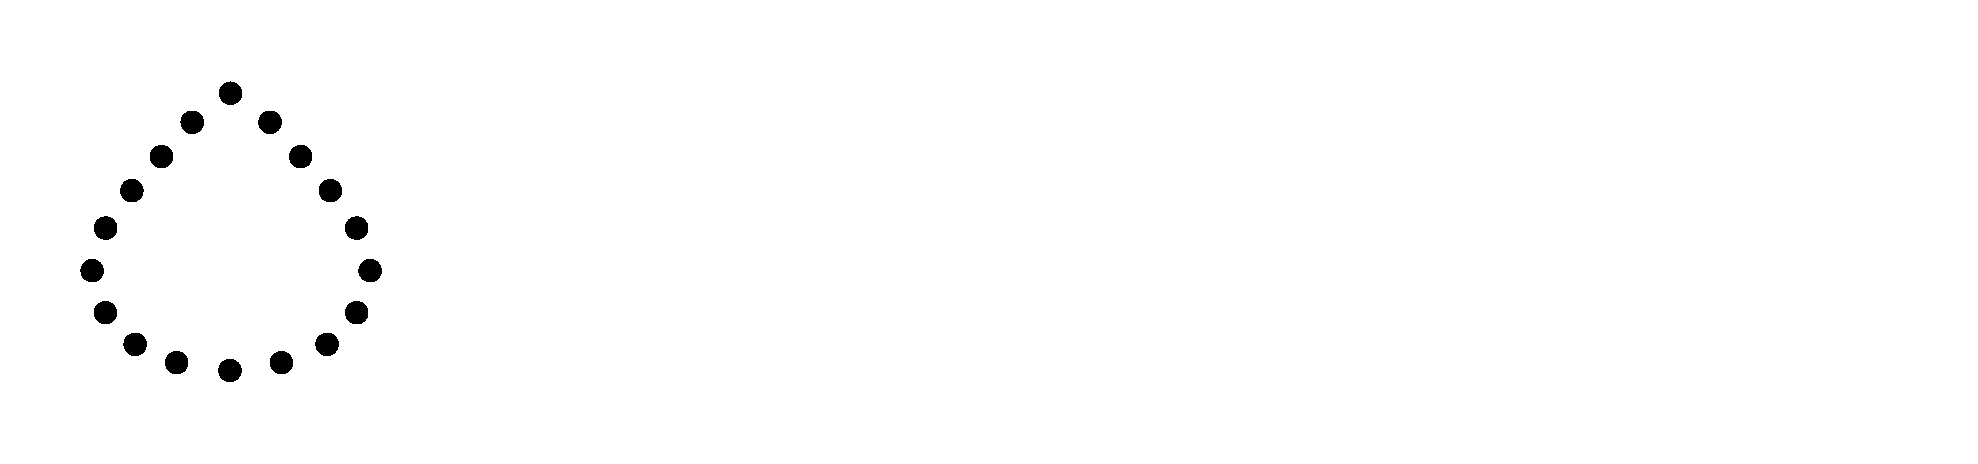 beyond type 1